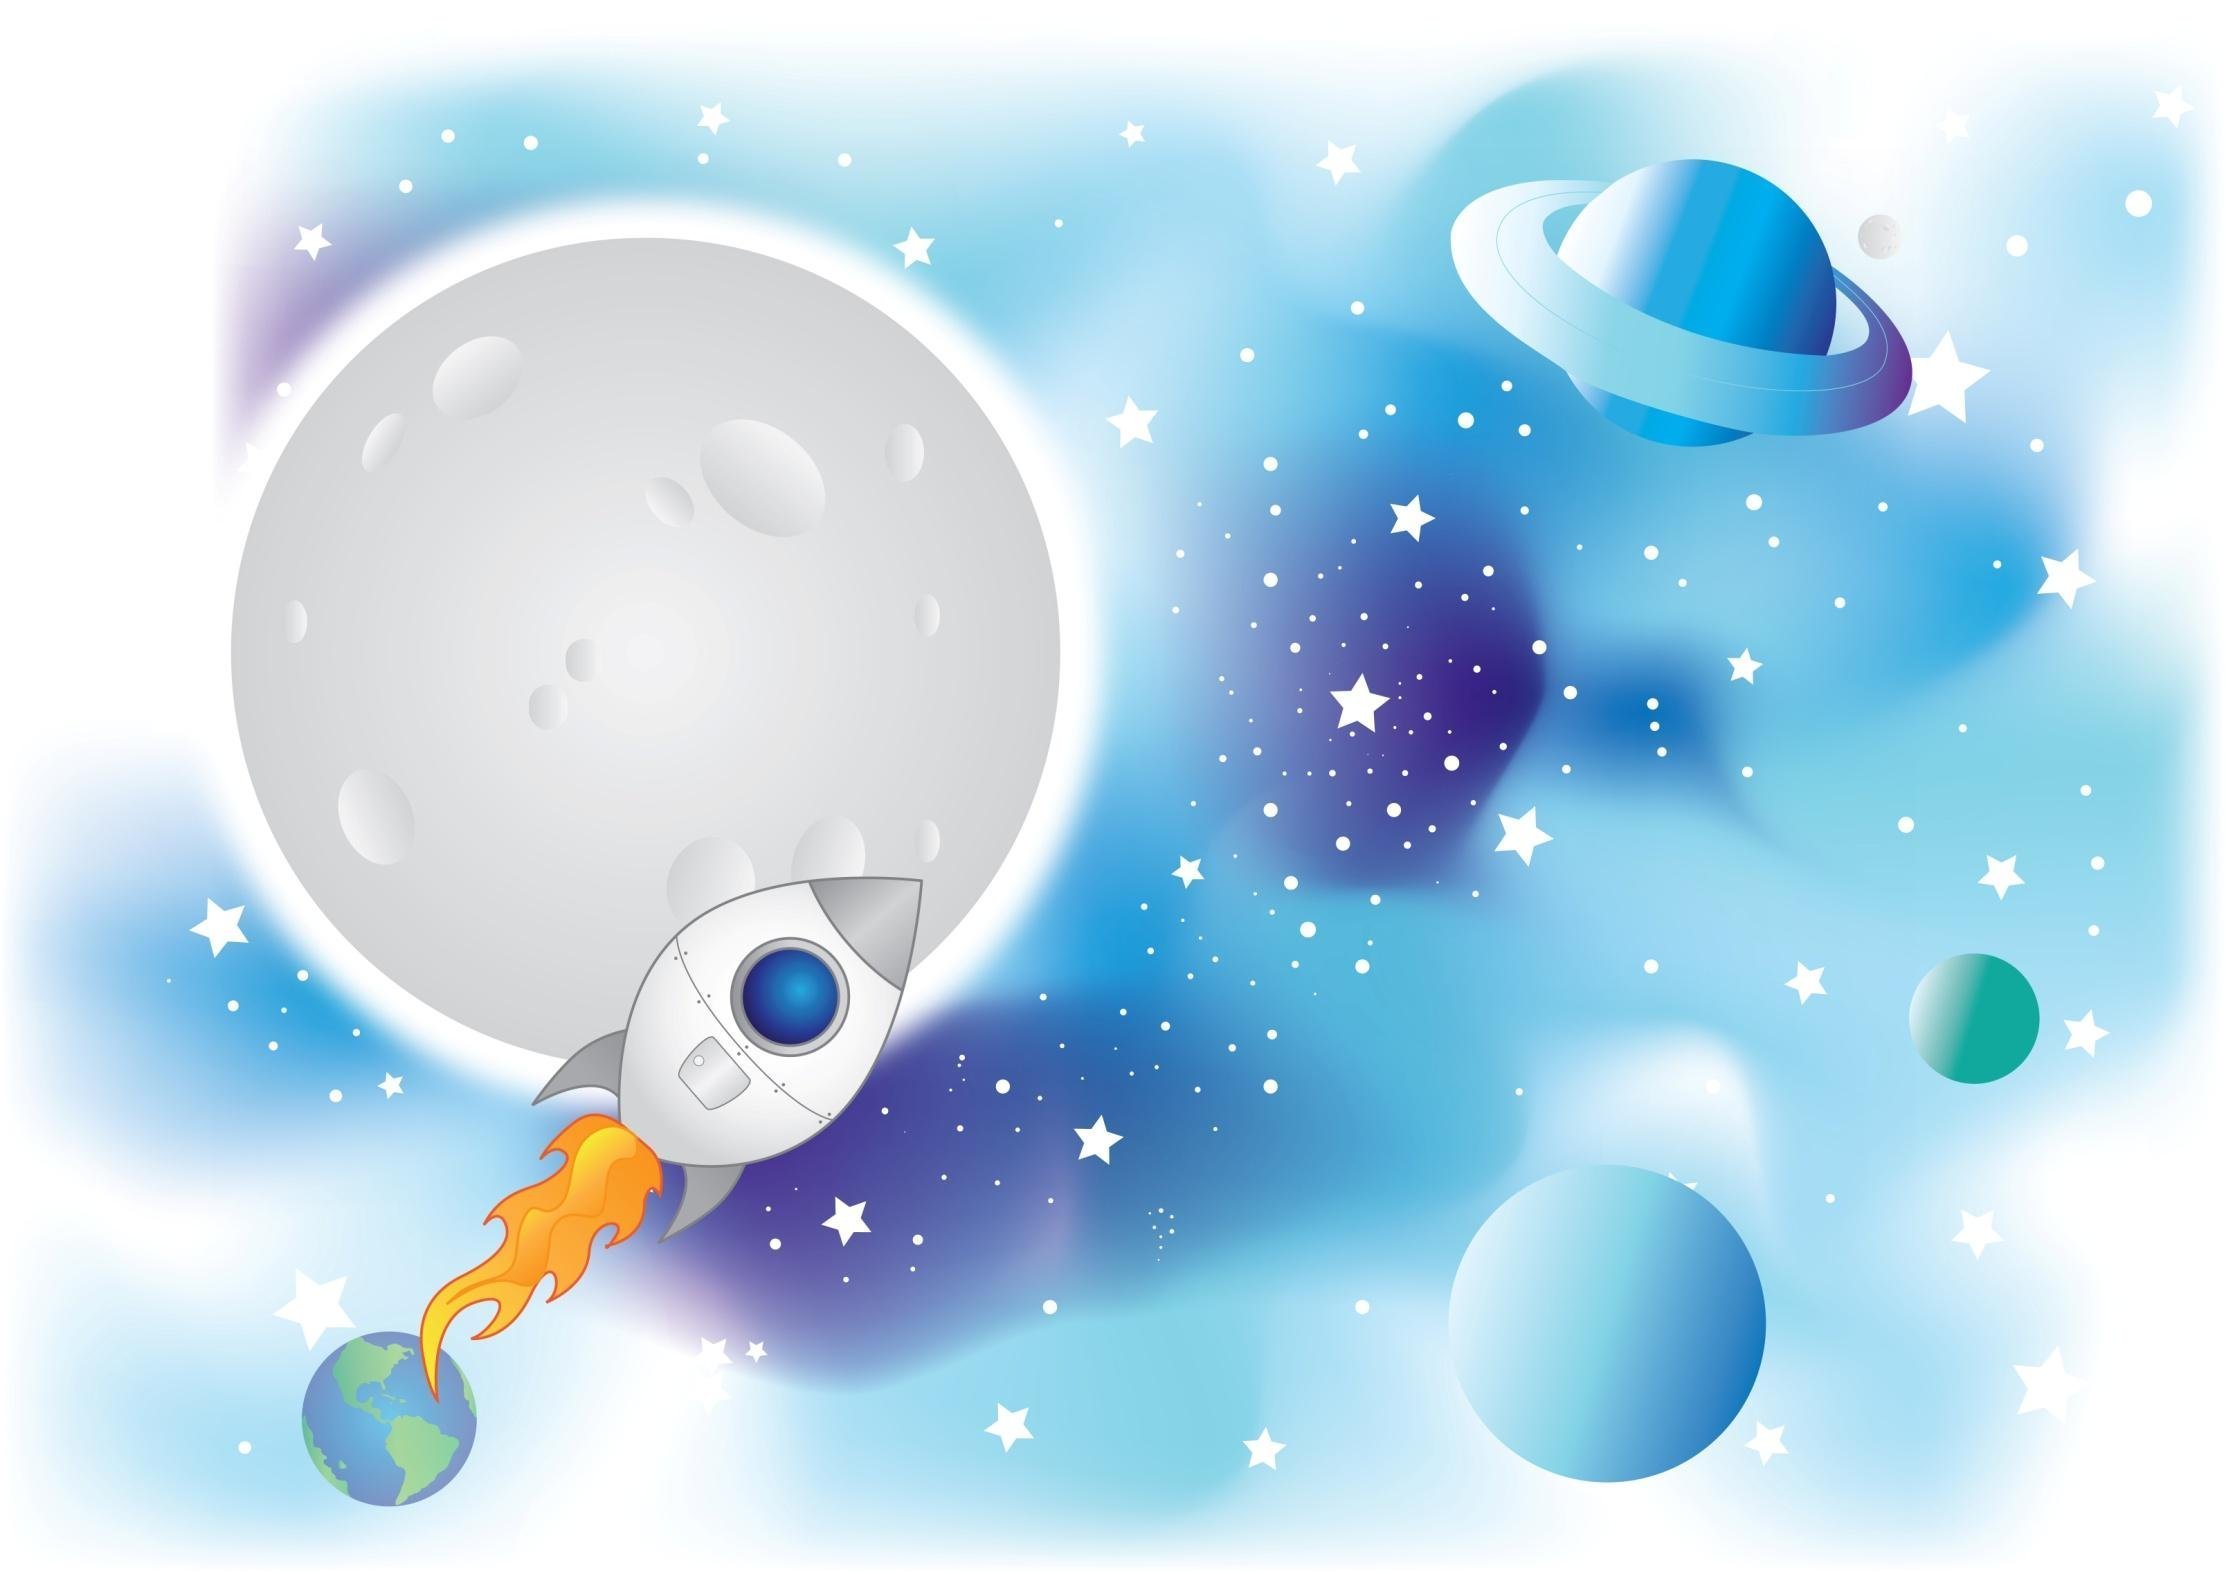 Картинки космос для дошкольников